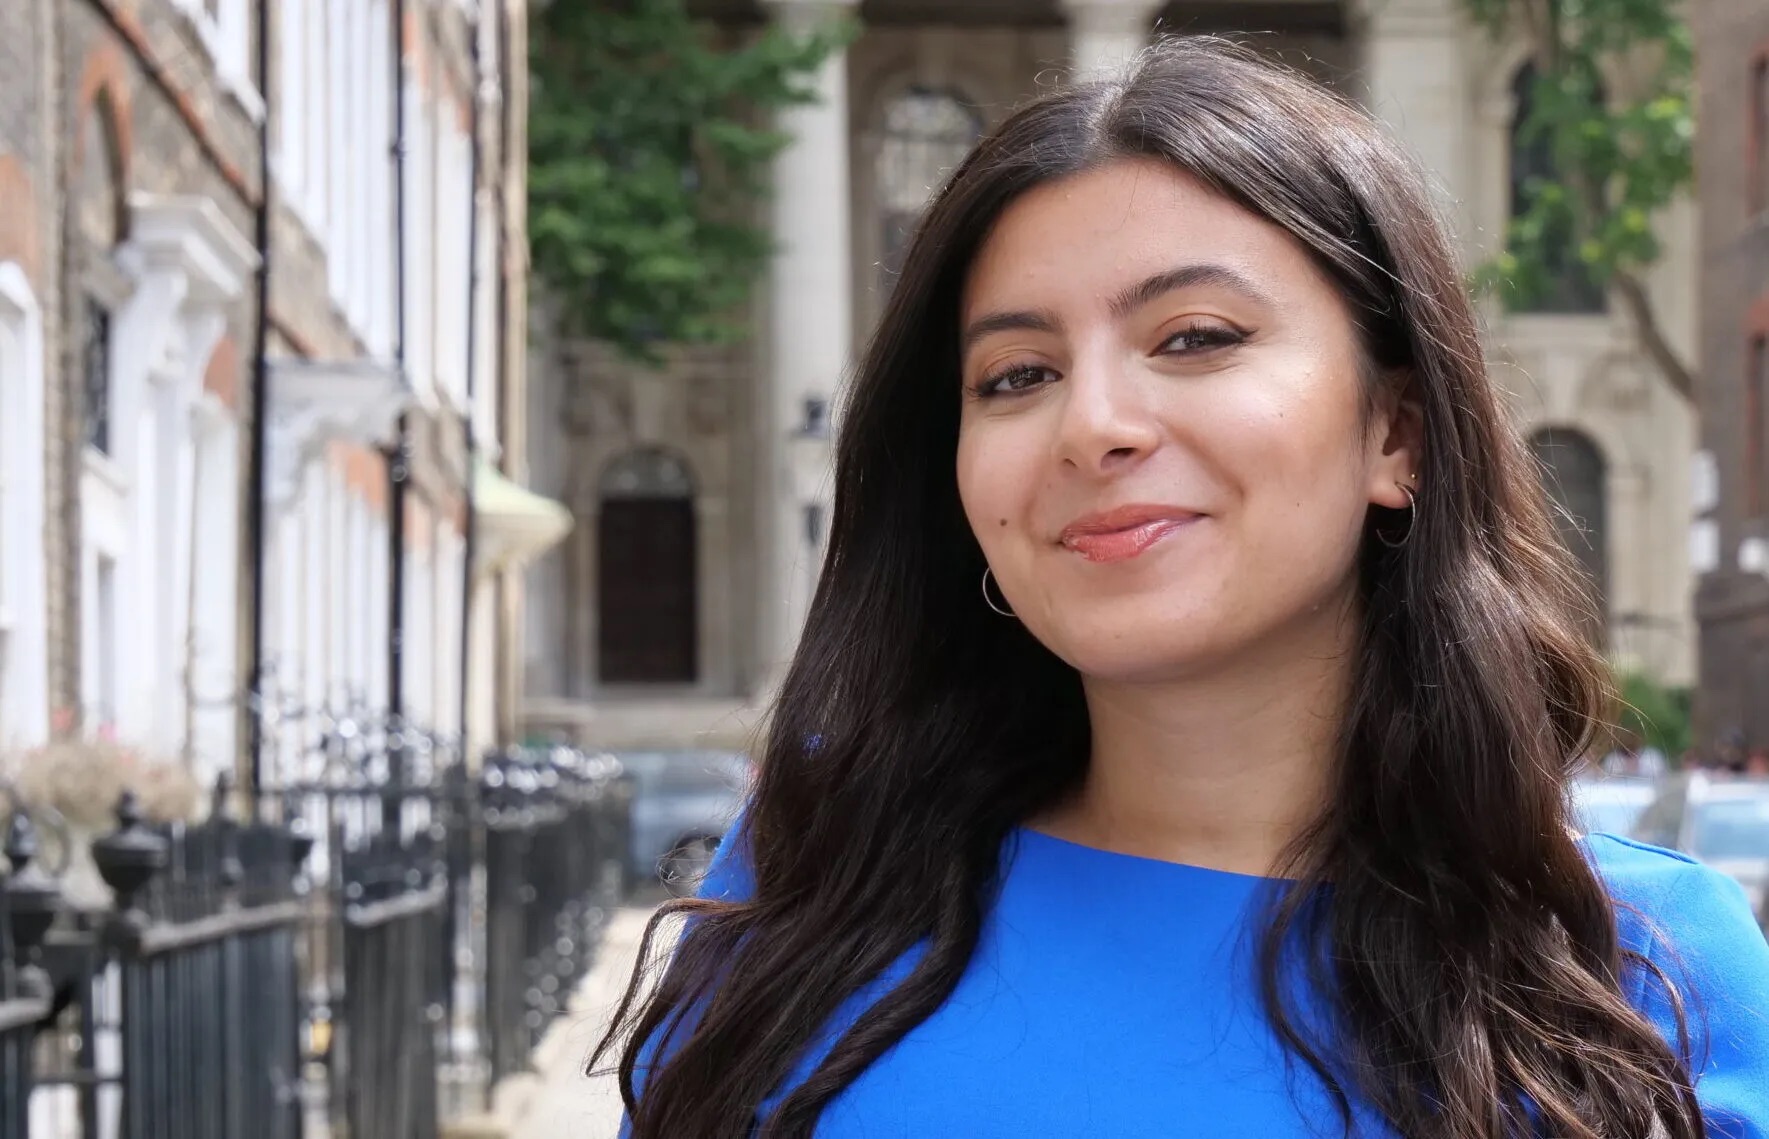 Reem Ibrahim destaca las claves ocultas de las elecciones británicas